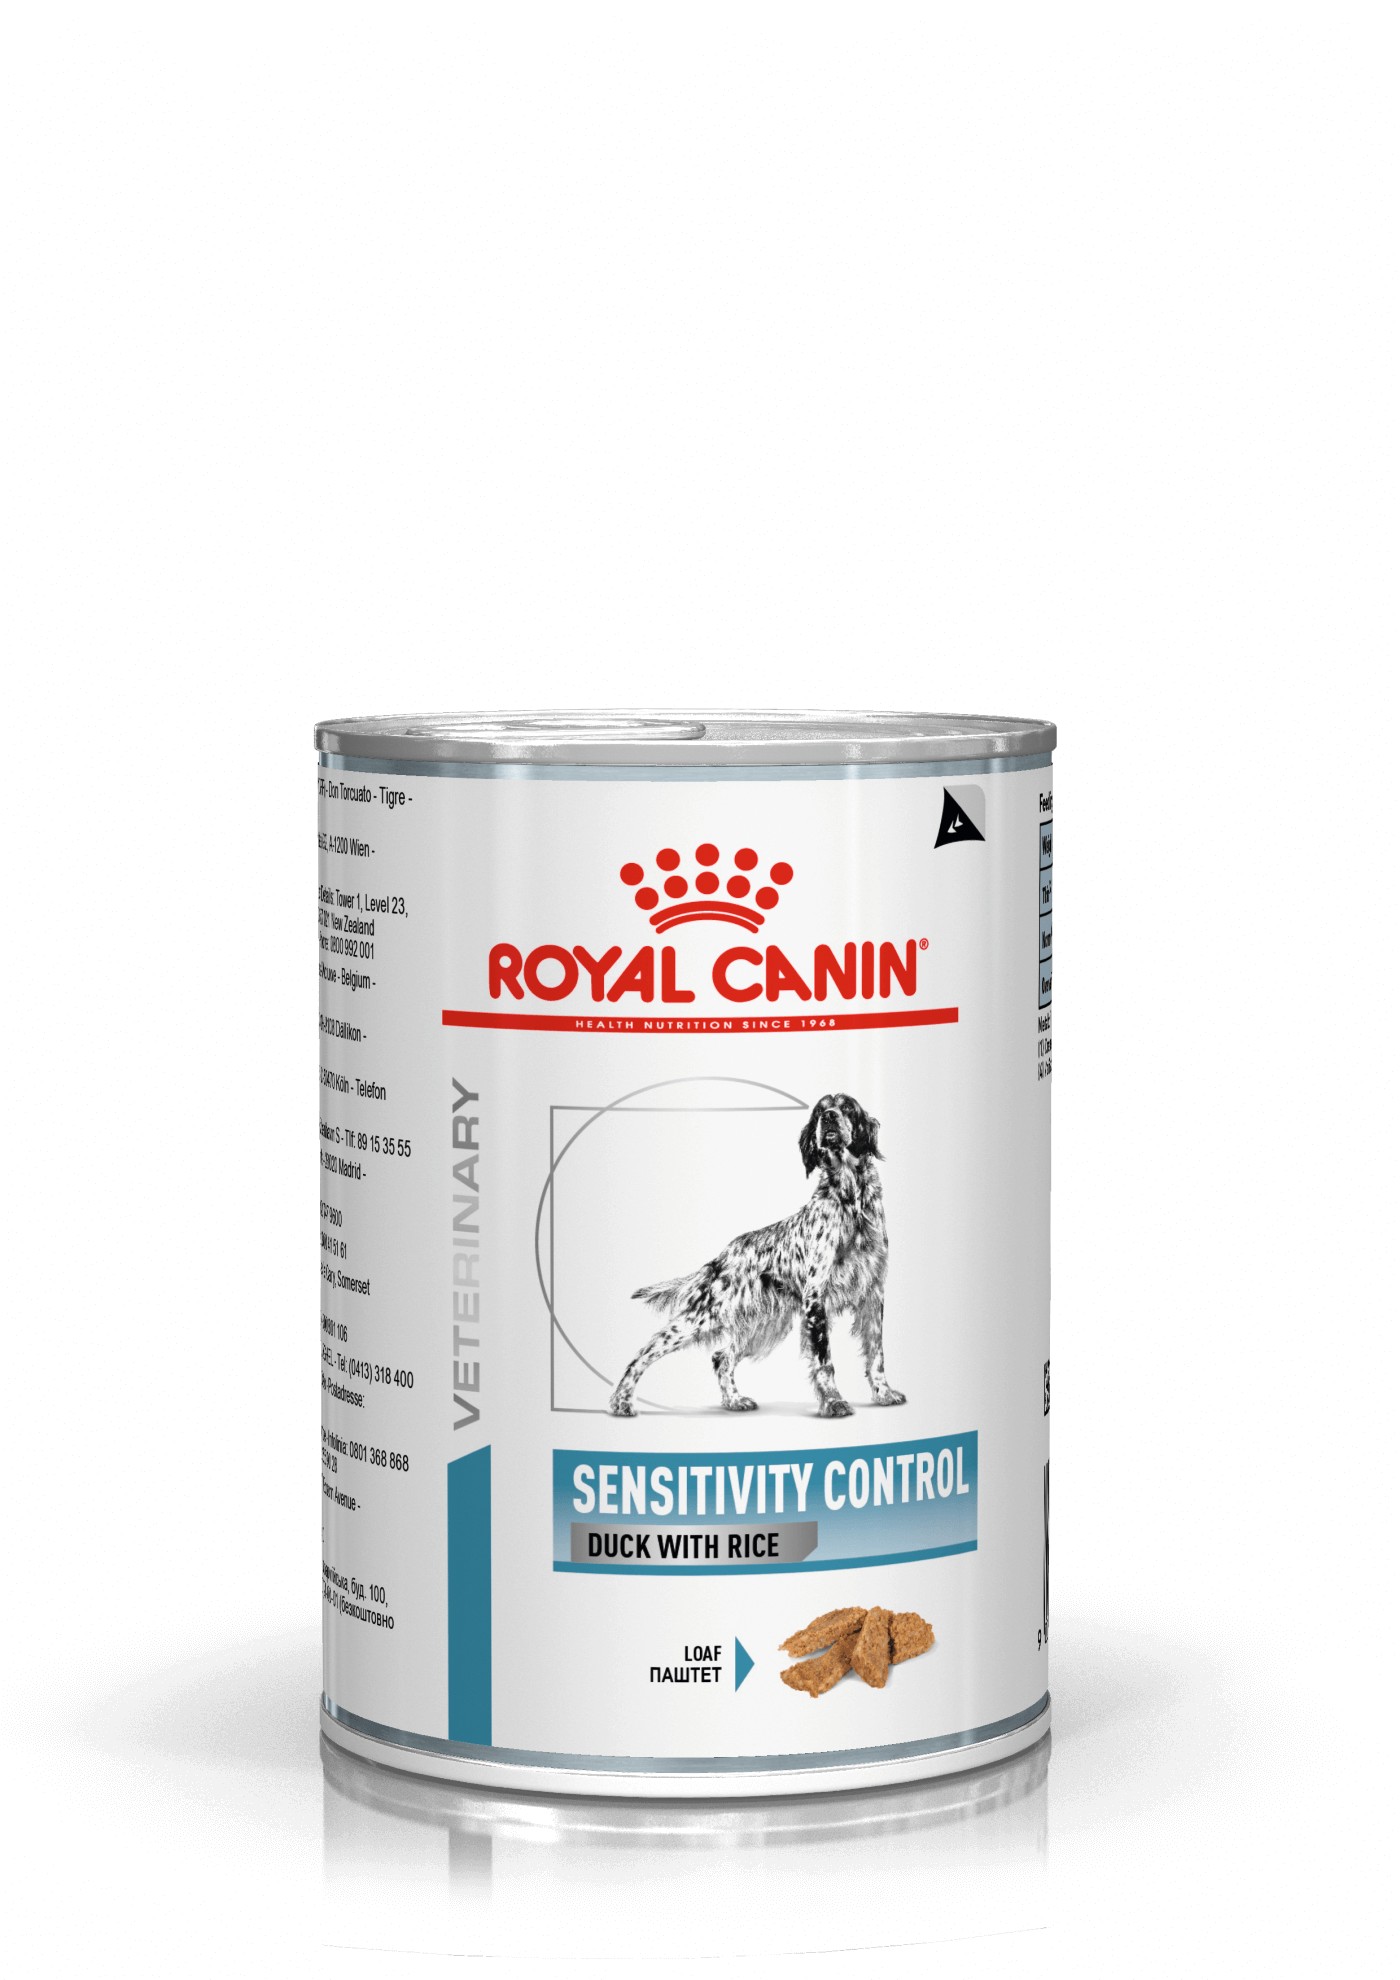 Royal Canin Veterinary Sensitivity Control canard avec riz pâtée pour chien